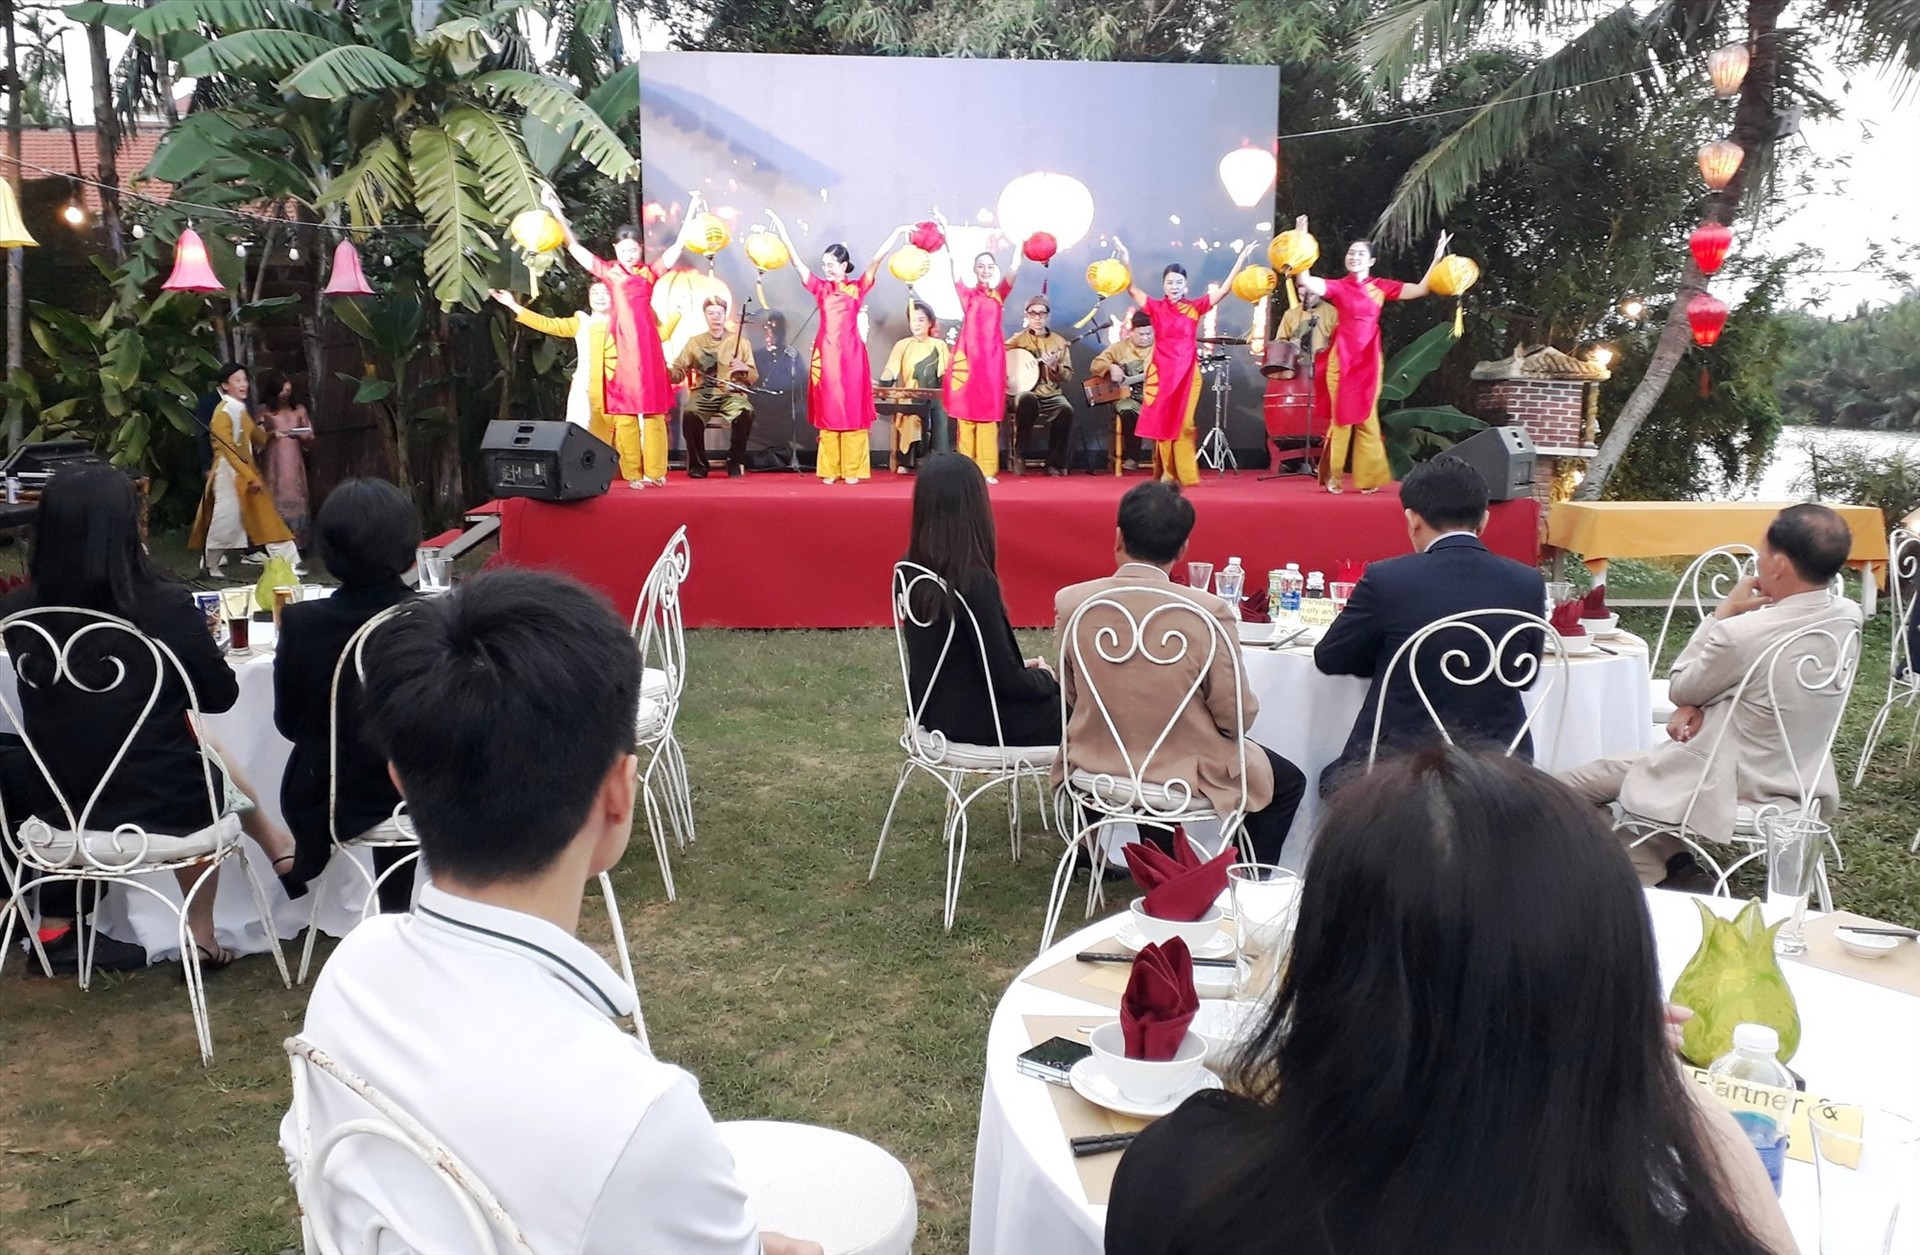 Trong chương trình gala, đoàn lữ hành Philippines rất thích khi được xem chương trình biểu diễn nghệ thuật dân tộc của Nhà biểu diễn nghệ thuật cổ truyền Hội An.